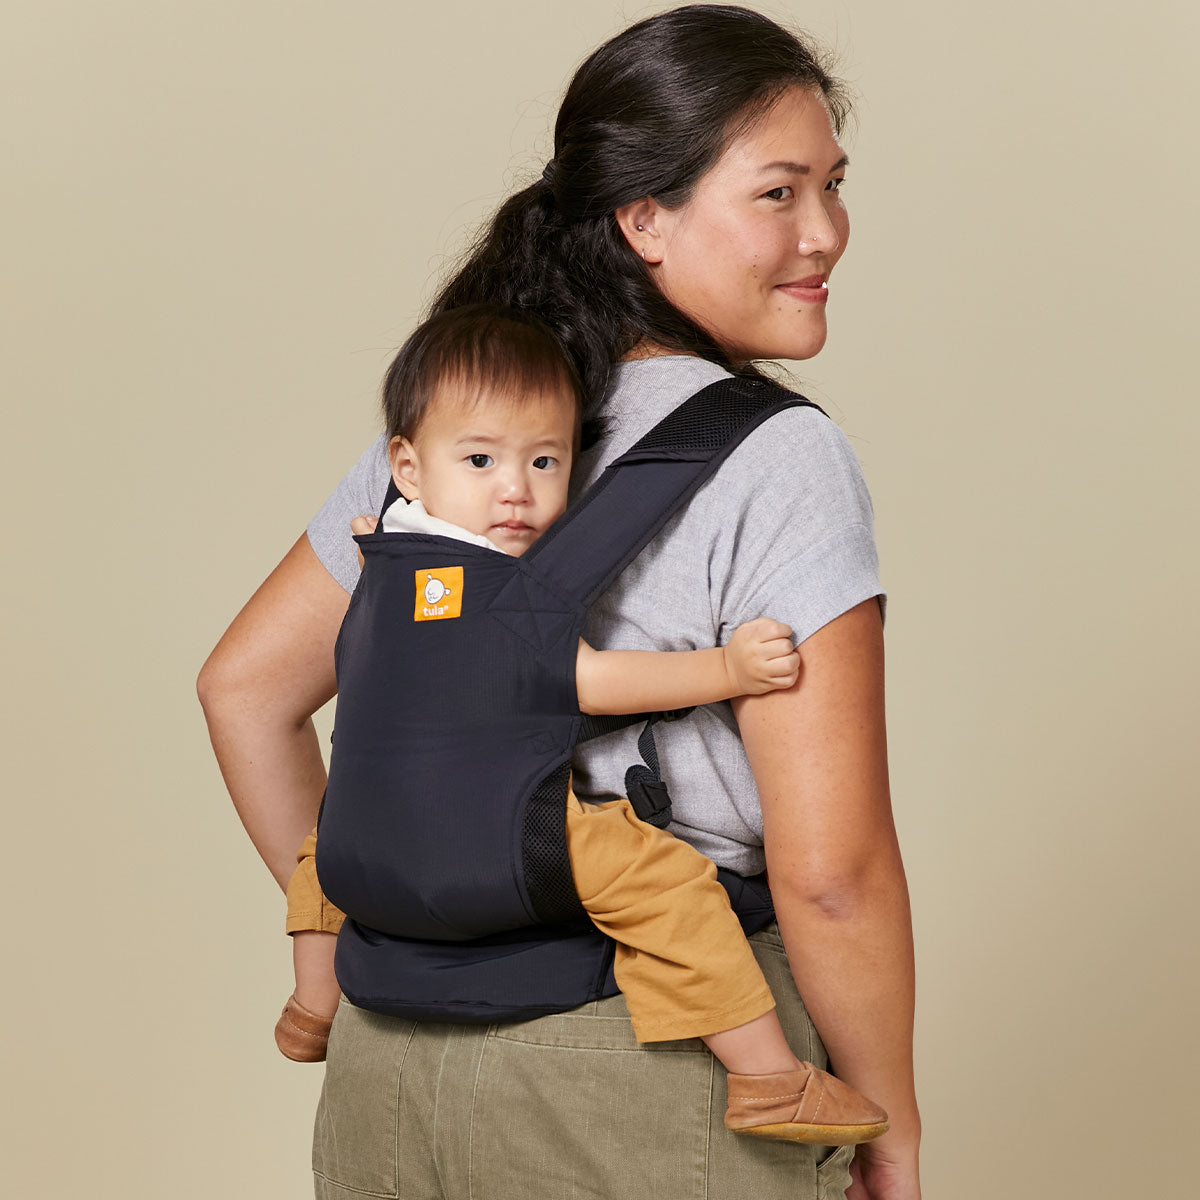 Äiti kantaa lastaan selässään Tula Lite -kantorepussa